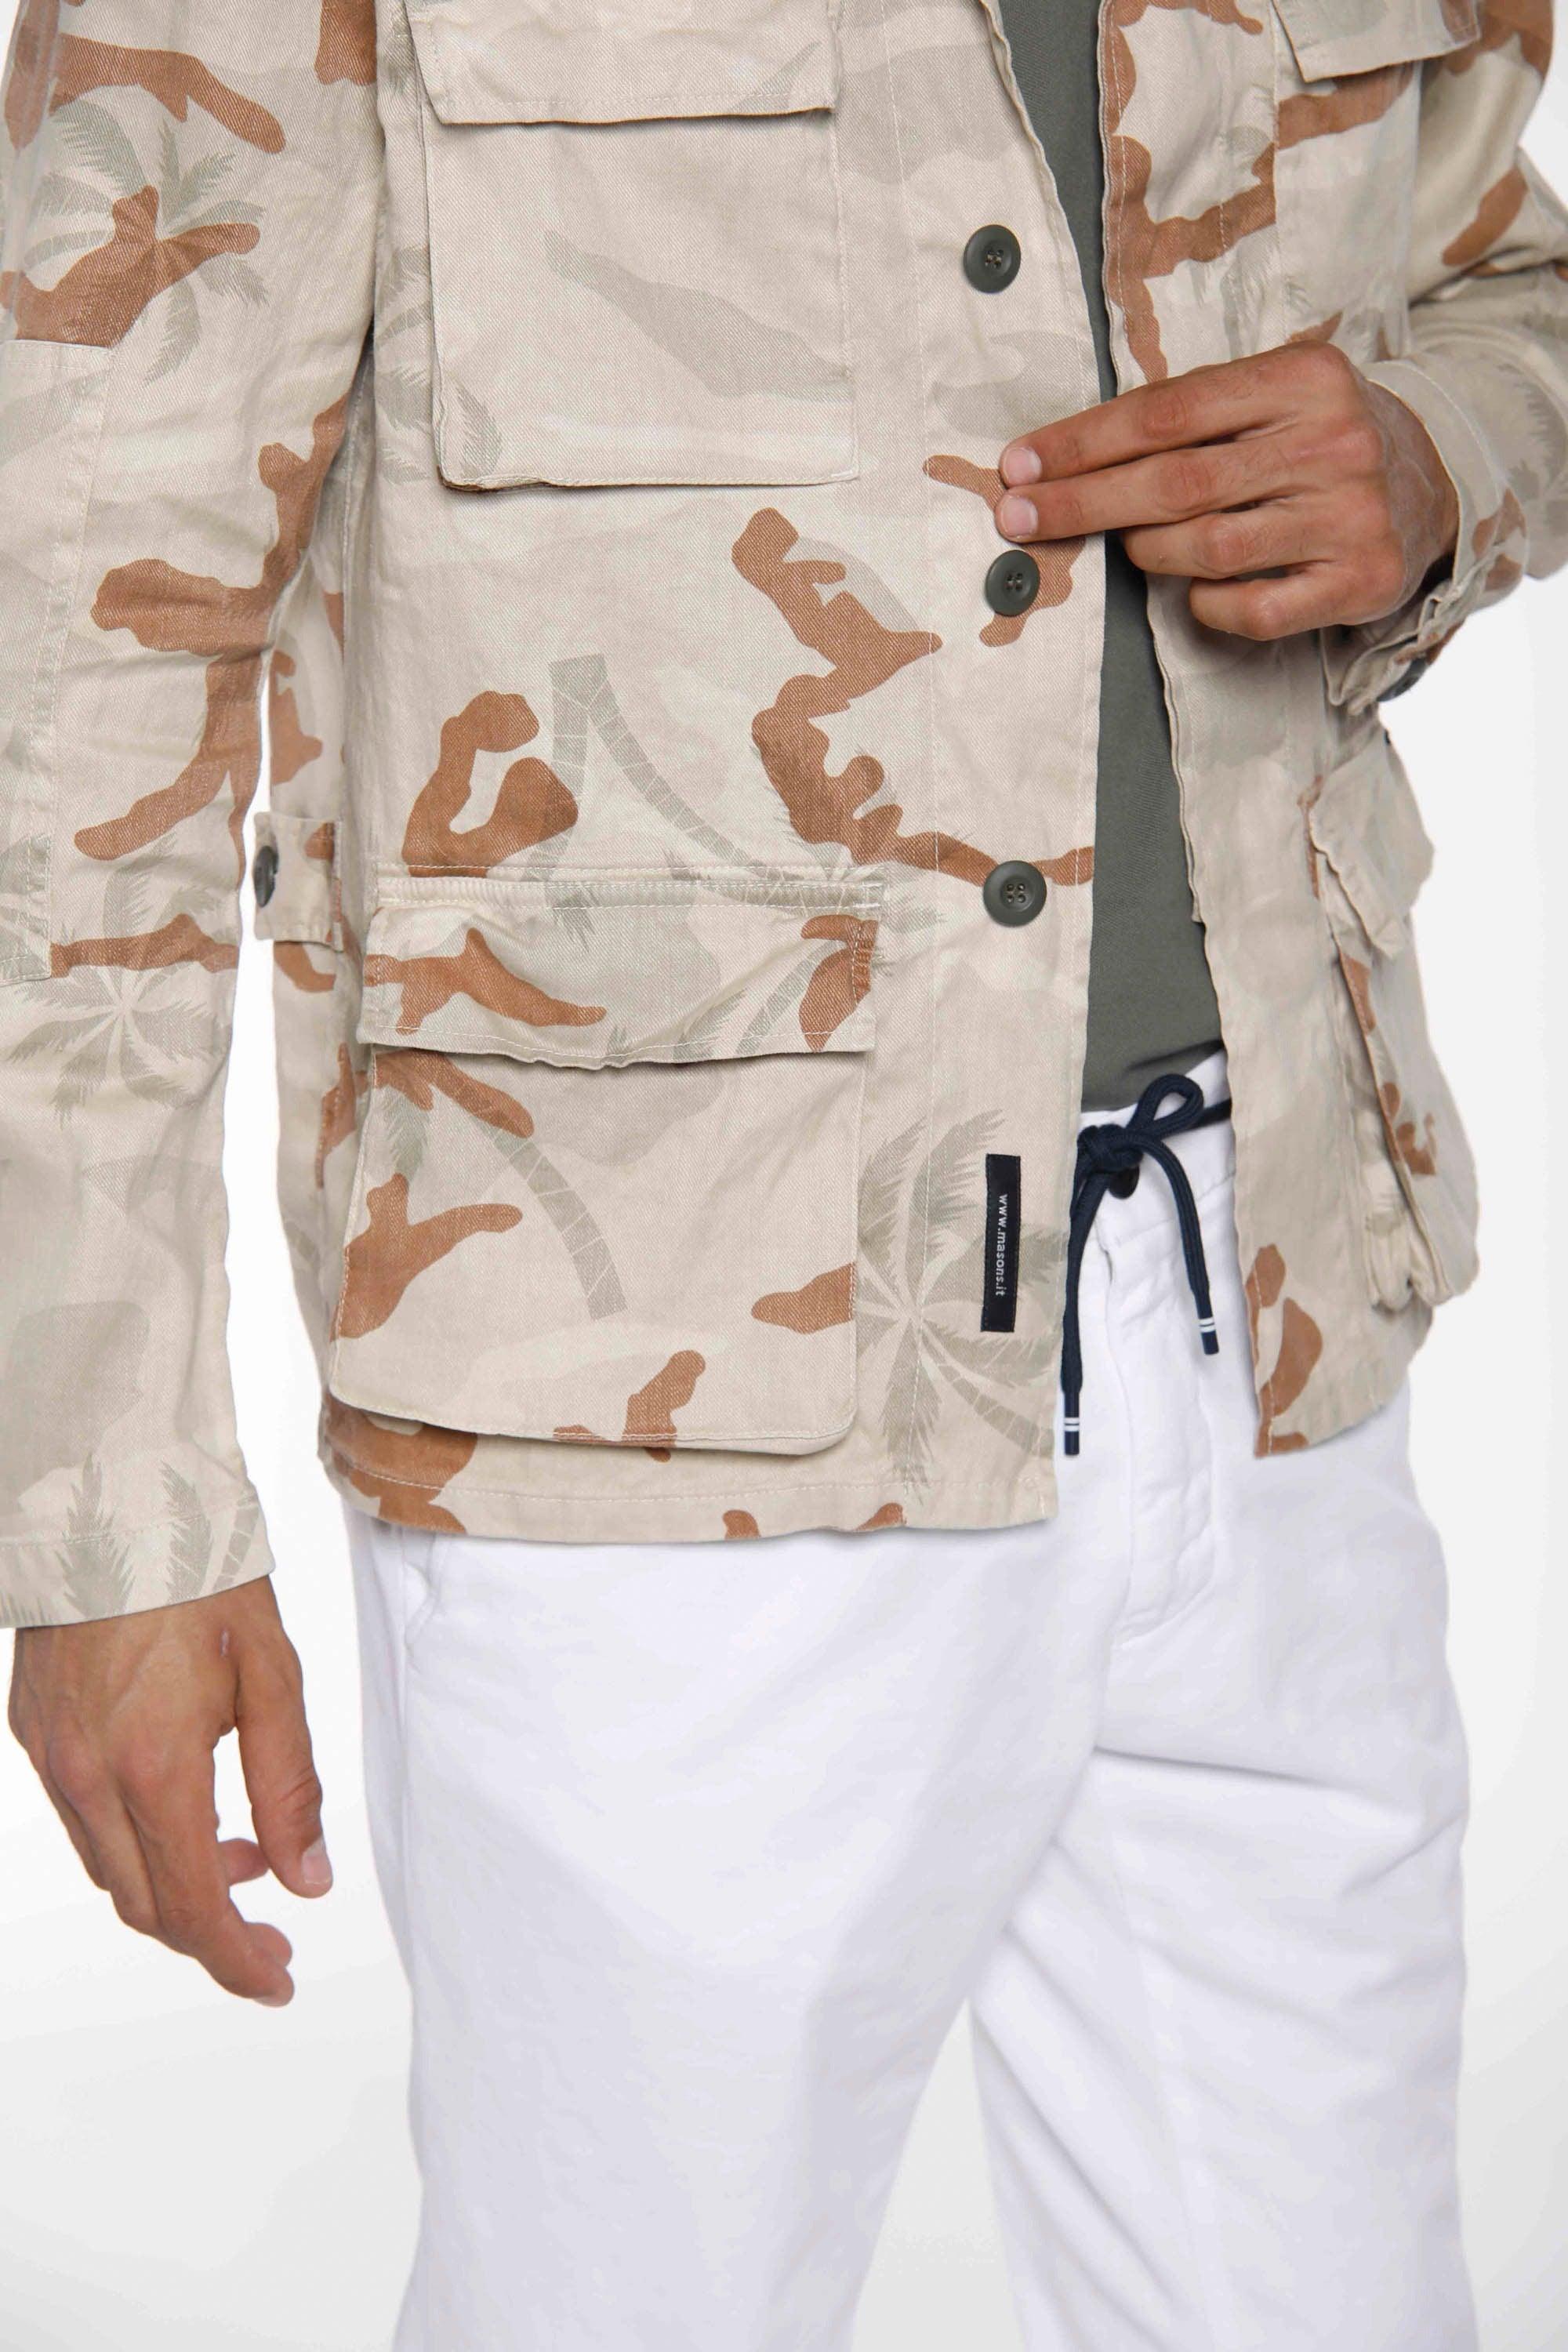 Flyshirt giacca camicia da uomo in lino camouflage con palme - Mason's